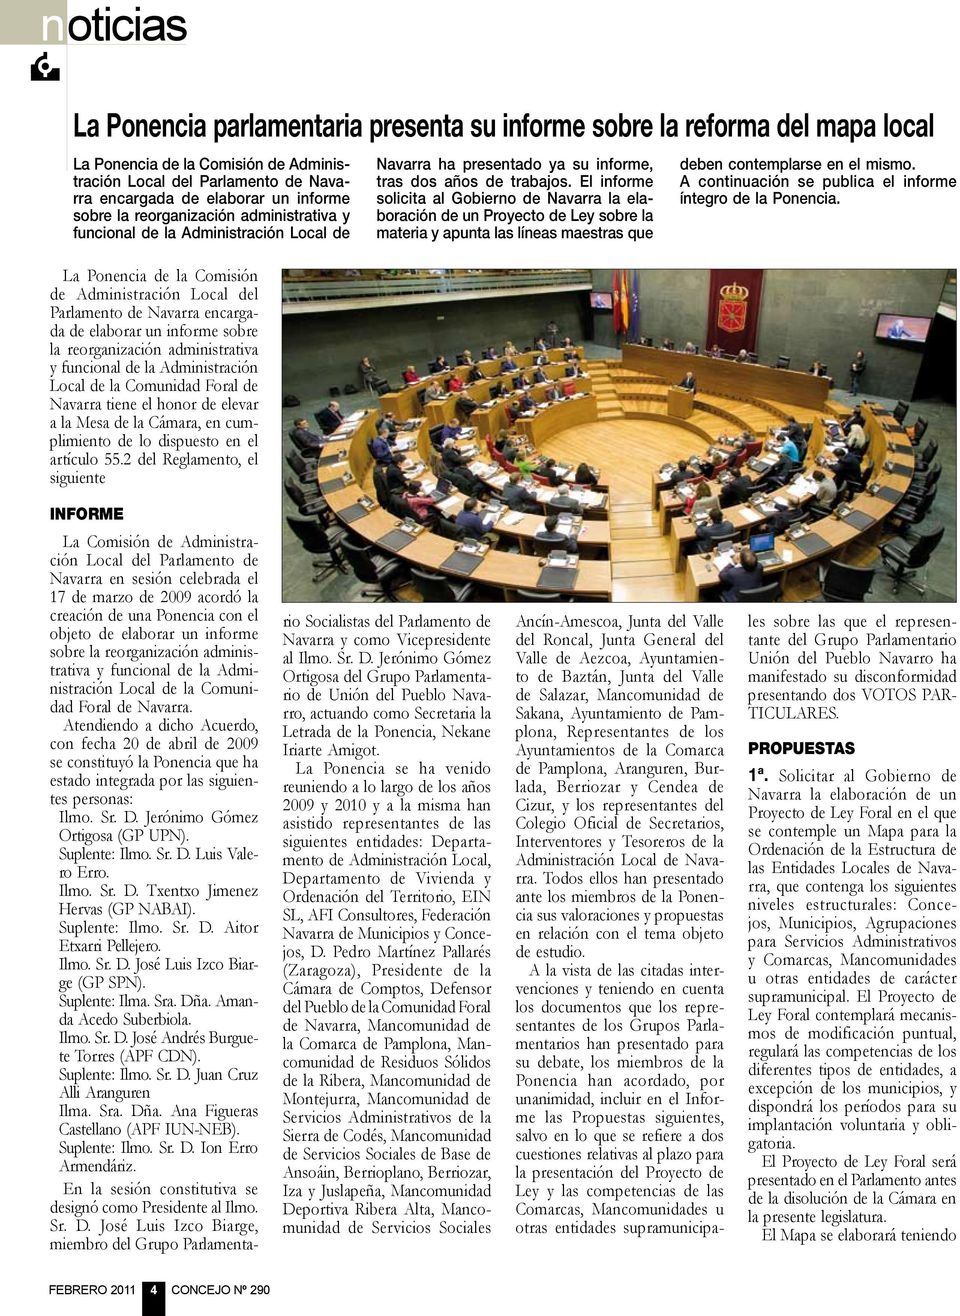 reorganización administrativa y funcional de la Administración Local de la Comunidad Foral de Navarra tiene el honor de elevar a la Mesa de la Cámara, en cumplimiento de lo dispuesto en el artículo